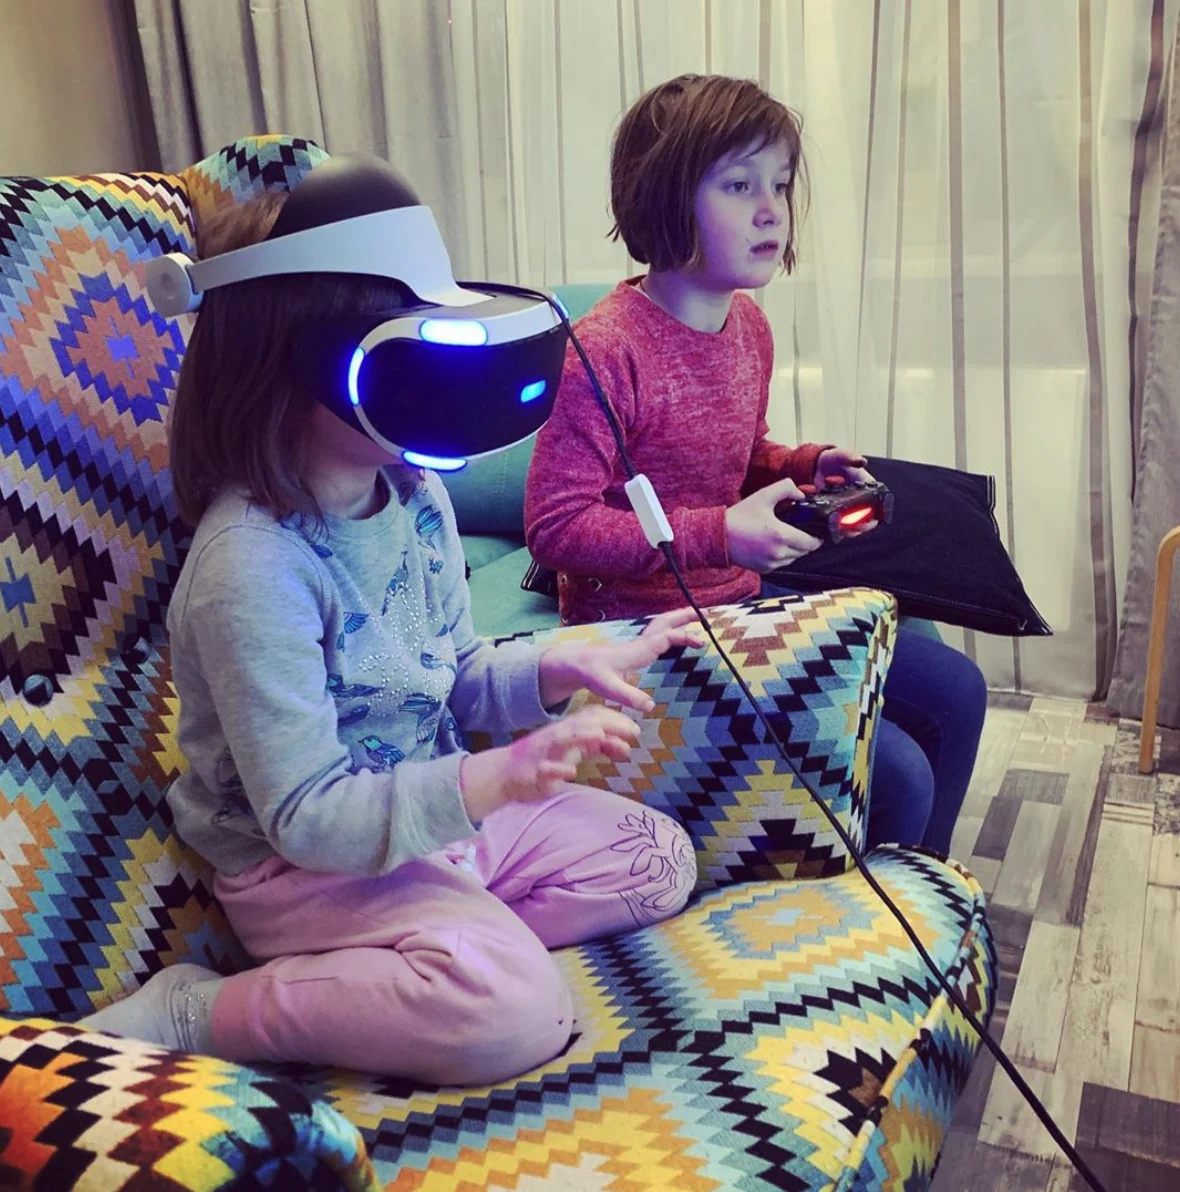 Александр Кузьменко разрешает играть дочерям Рите (5 лет, слева) и Томе (8 лет) только на большом экране. Это, как он считает, должно предотвратить «игру за диваном втихаря».